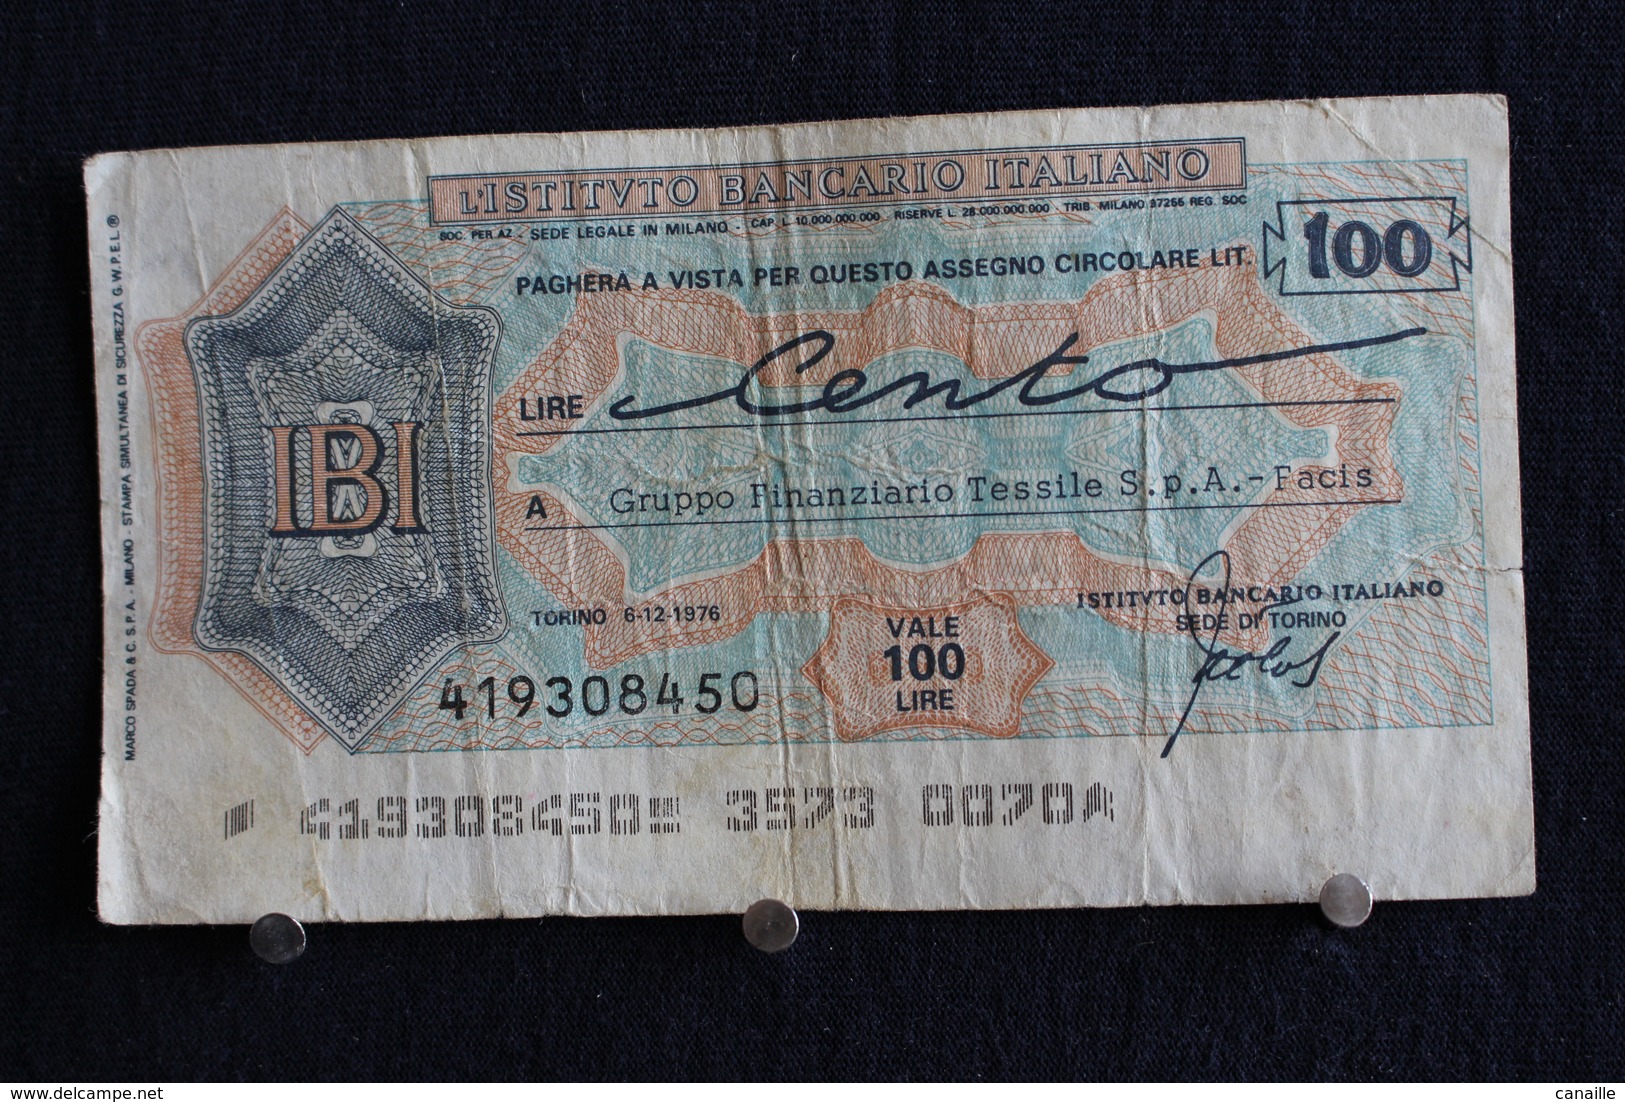 10 / Italie / 1946: Royaume / Biglietti Di Stato - L'Istituto Bancario Italiano Torino 6/12/1976 - Vale 100 Lire - - 100 Lire